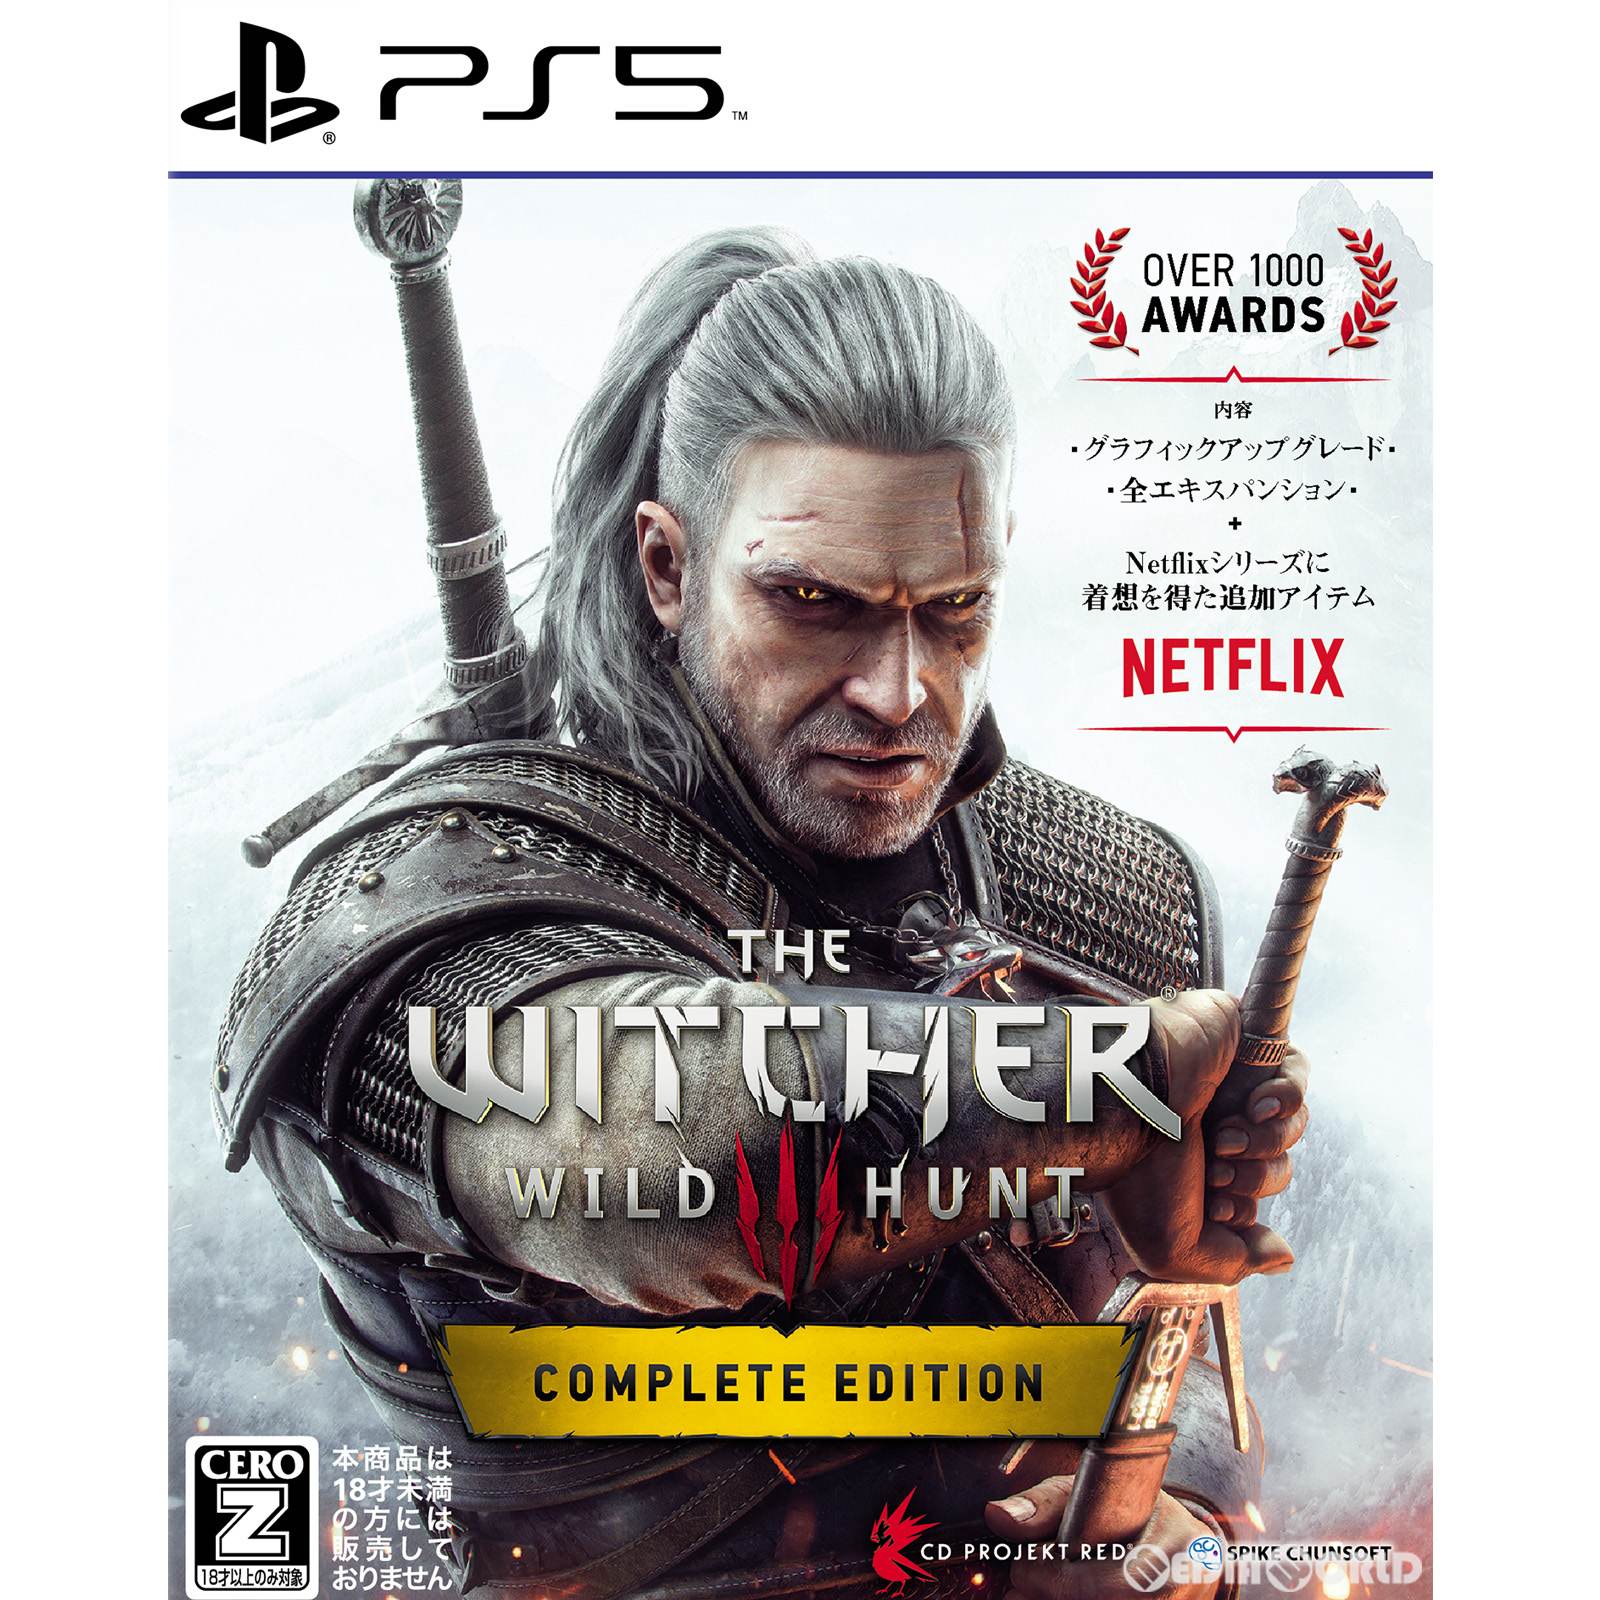 ウィッチャー3 ワイルドハント コンプリートエディション(The Witcher 3: Wild Hunt Complete Edition)(20230209)